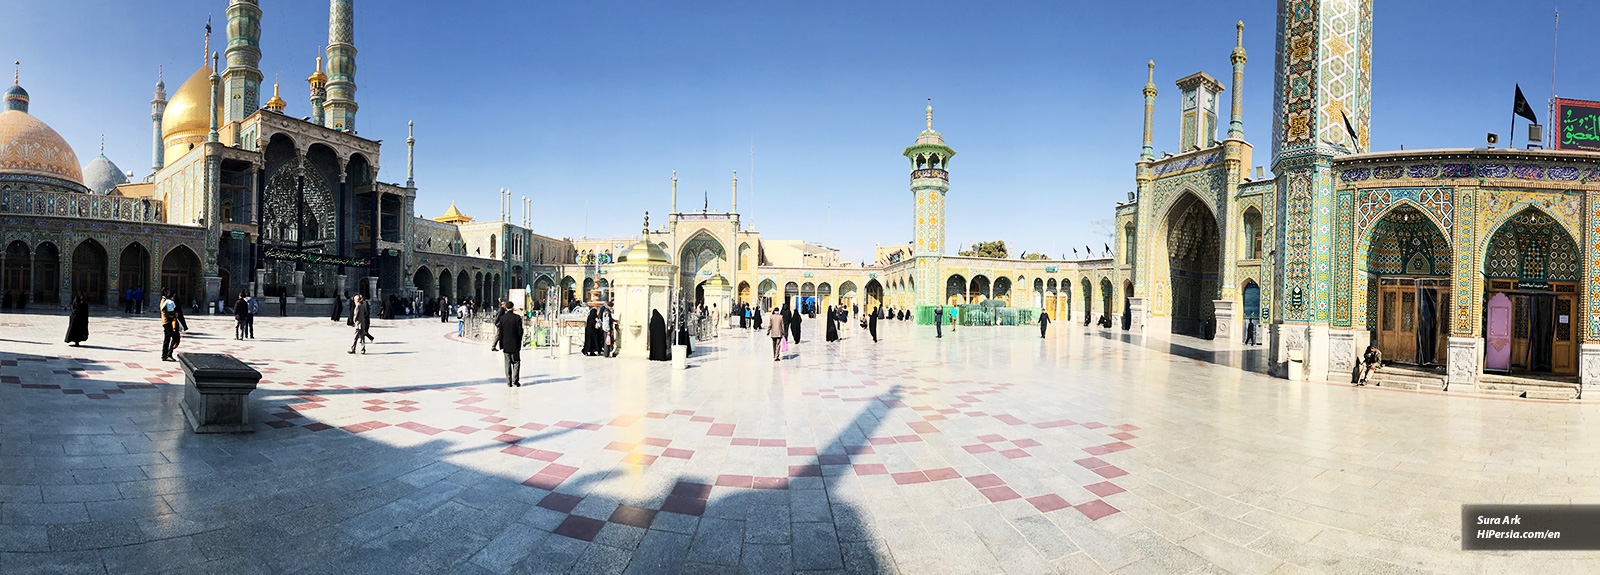 Fatima Masumeh Shrine